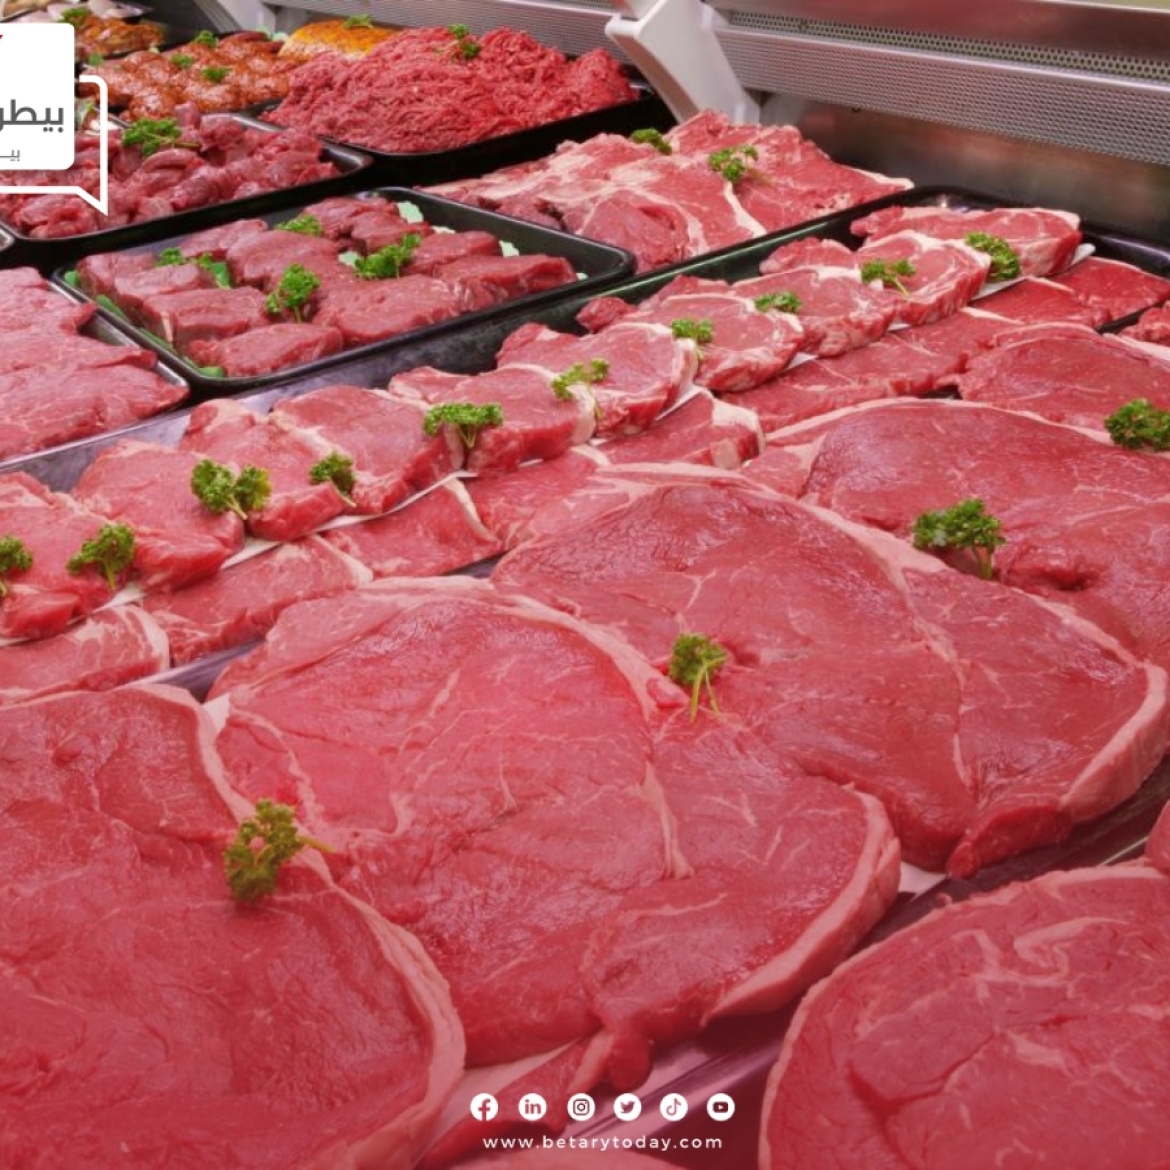 هدوء لحظي في أسعار اللحوم الحمراء البلدي اليوم الأحد 12 مايو في الأسواق